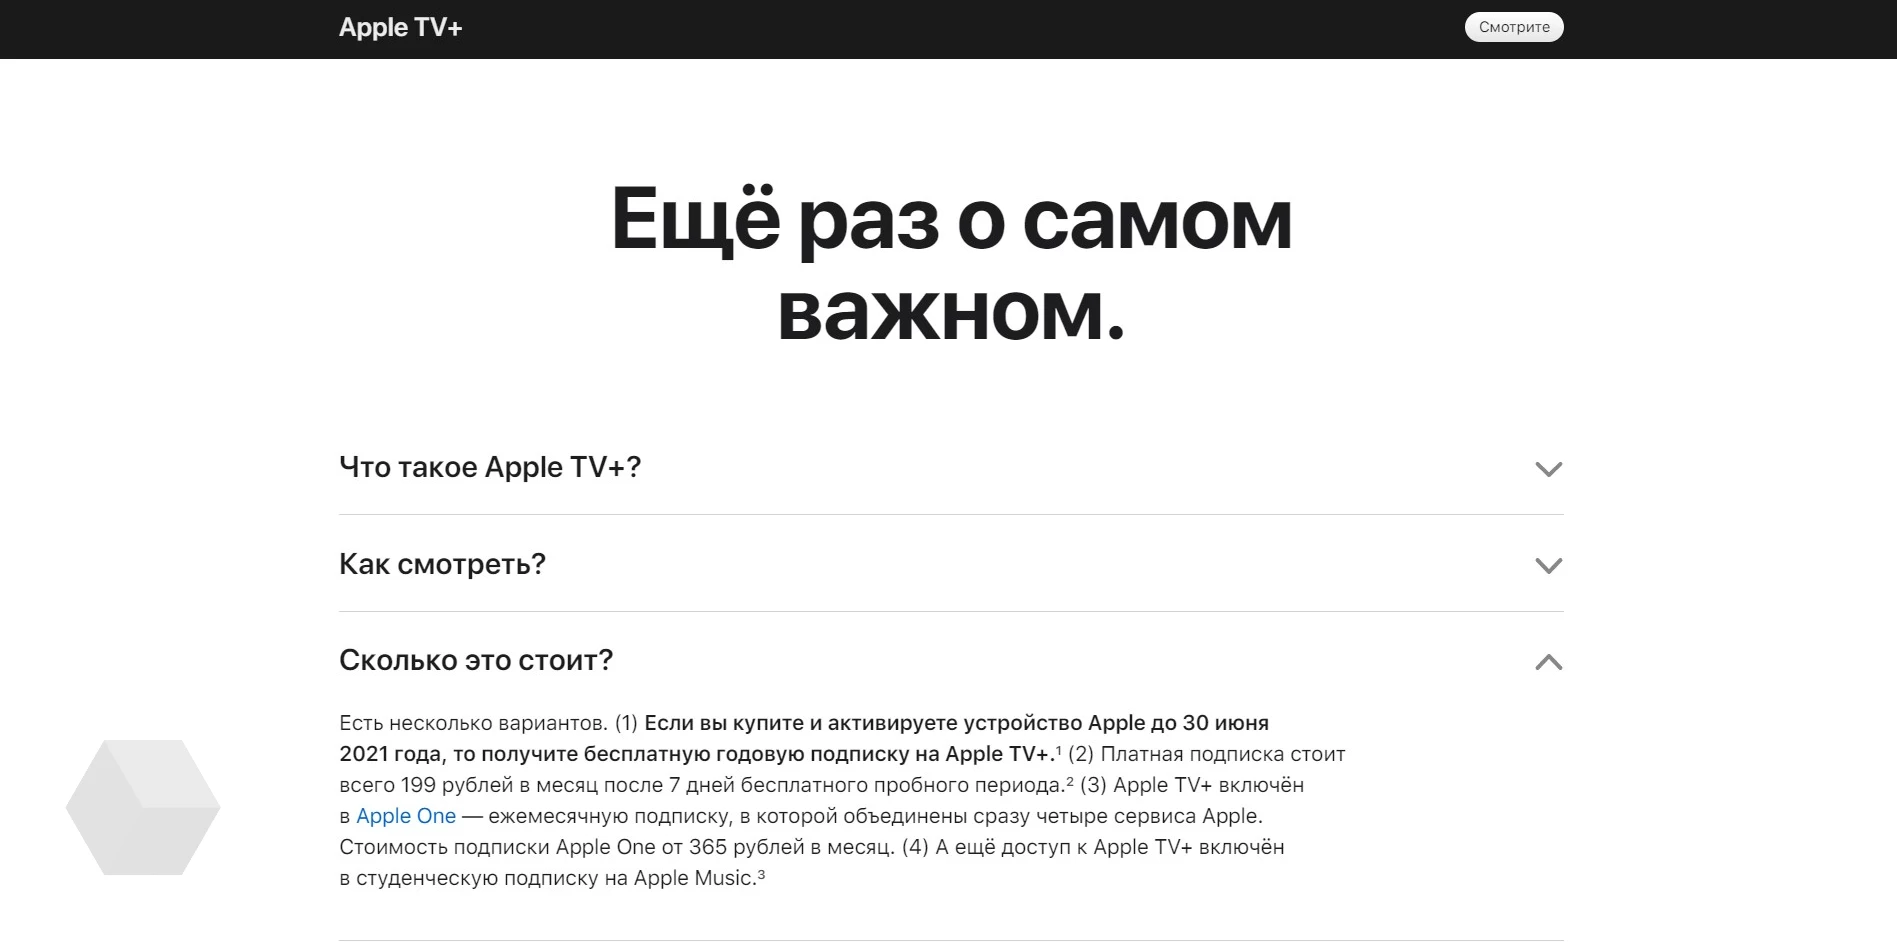 Я год пользуюсь apple tv+. очень доволен и оставлю подписку